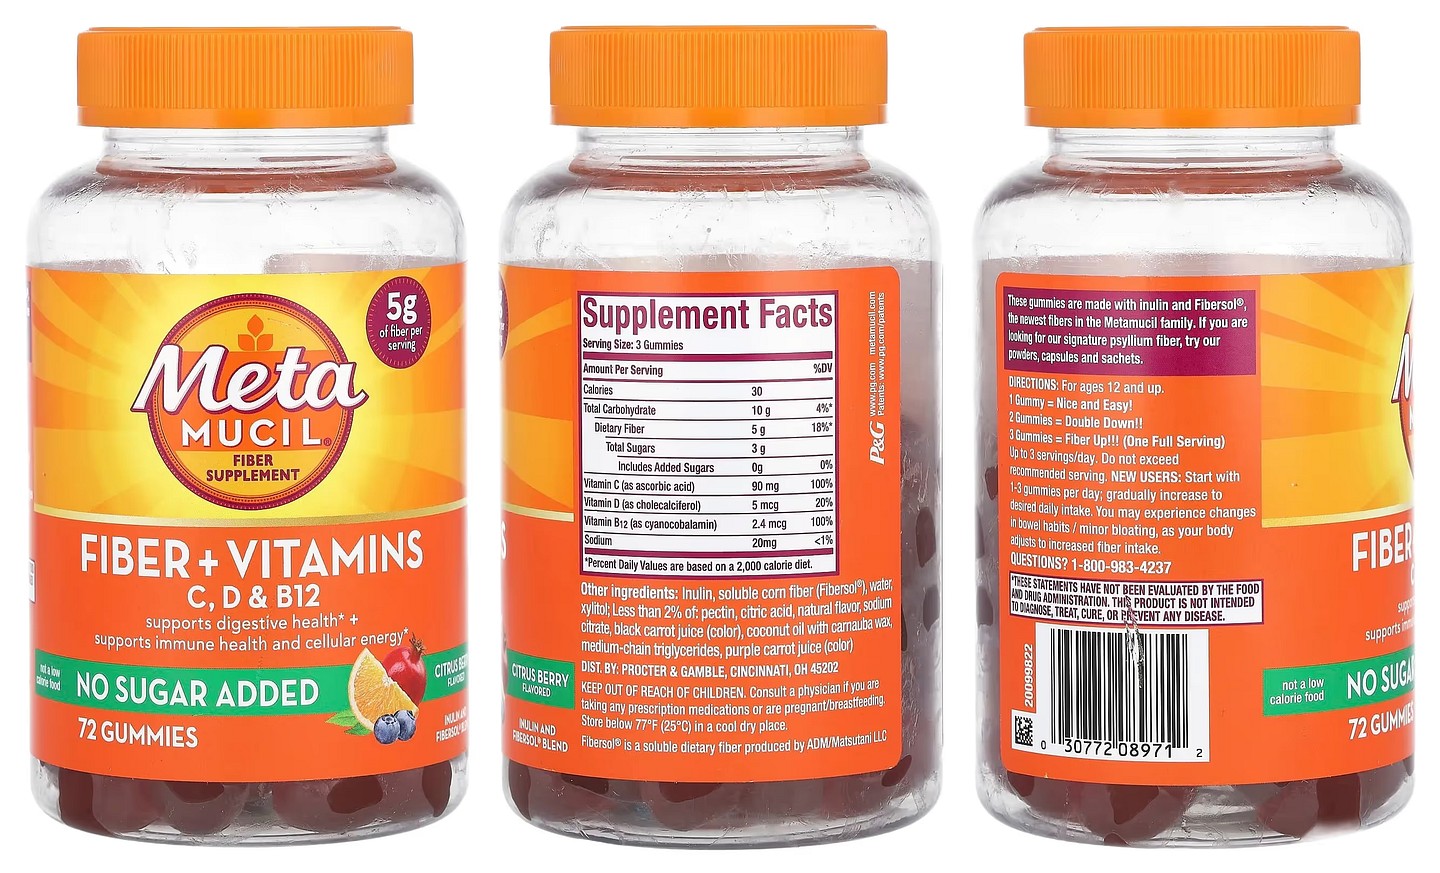 Metamucil, Fiber + Vitamins, C, D, & B12, Citrus Berry packaging